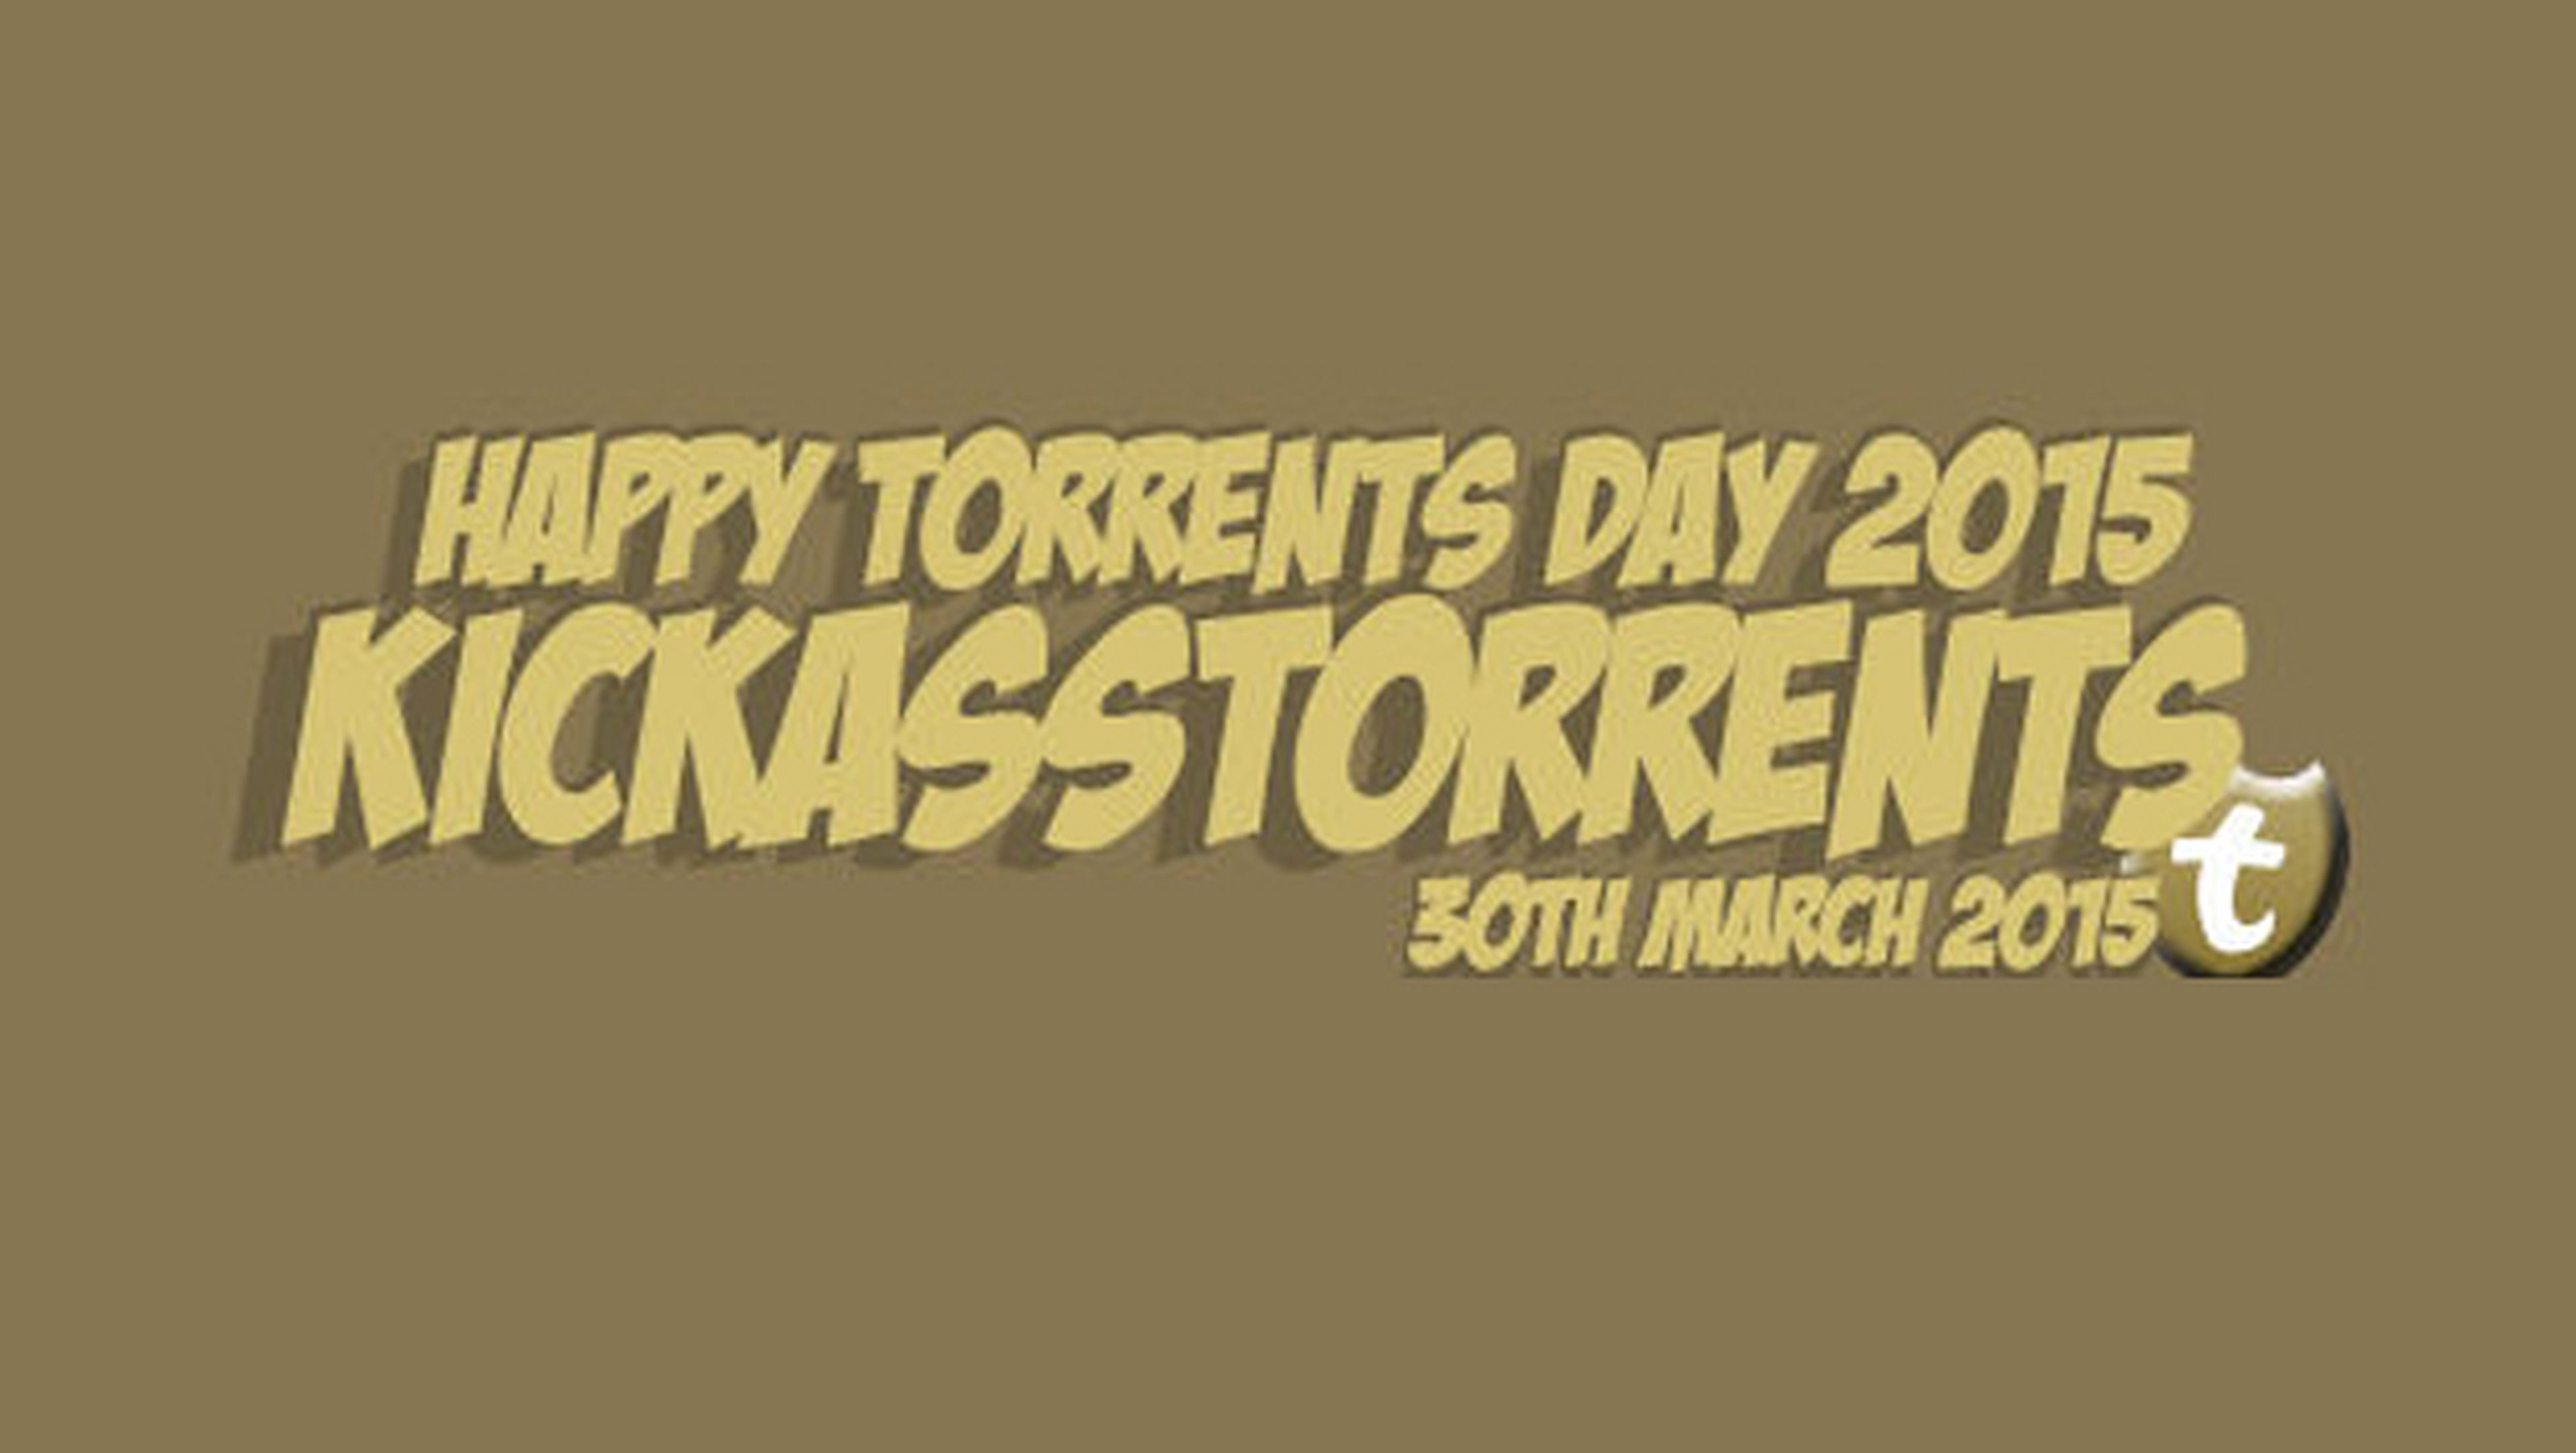 kickass torrent day